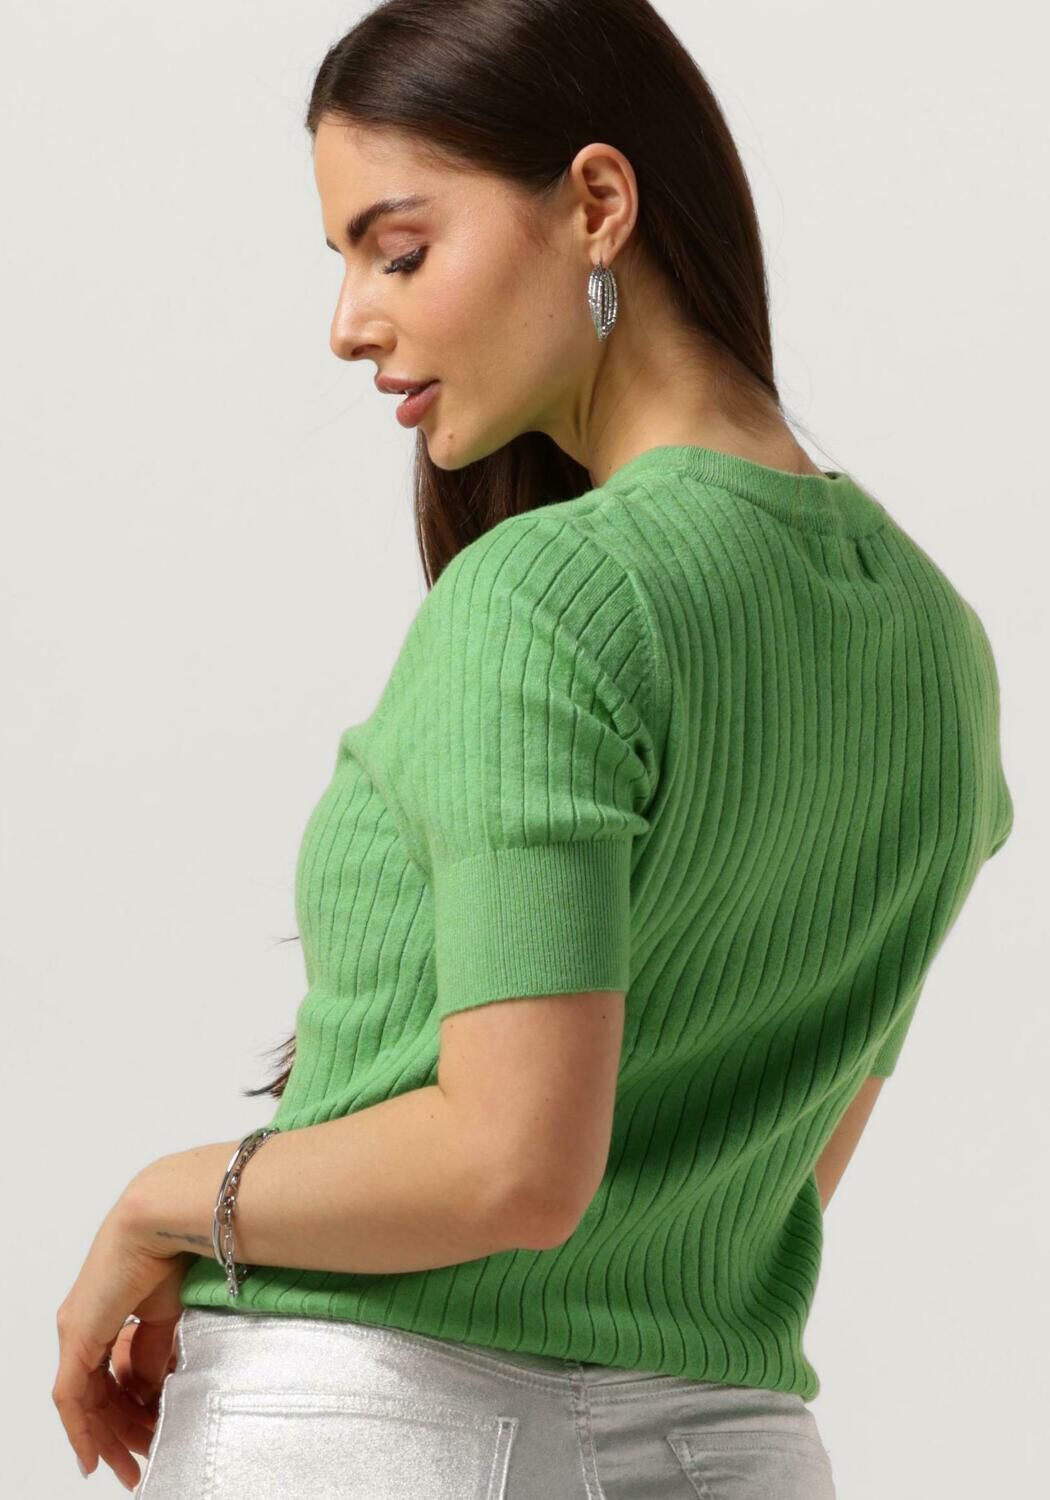 OBJECT Dames Tops & T-shirts Objnoelle S s Knit T-shirt Groen